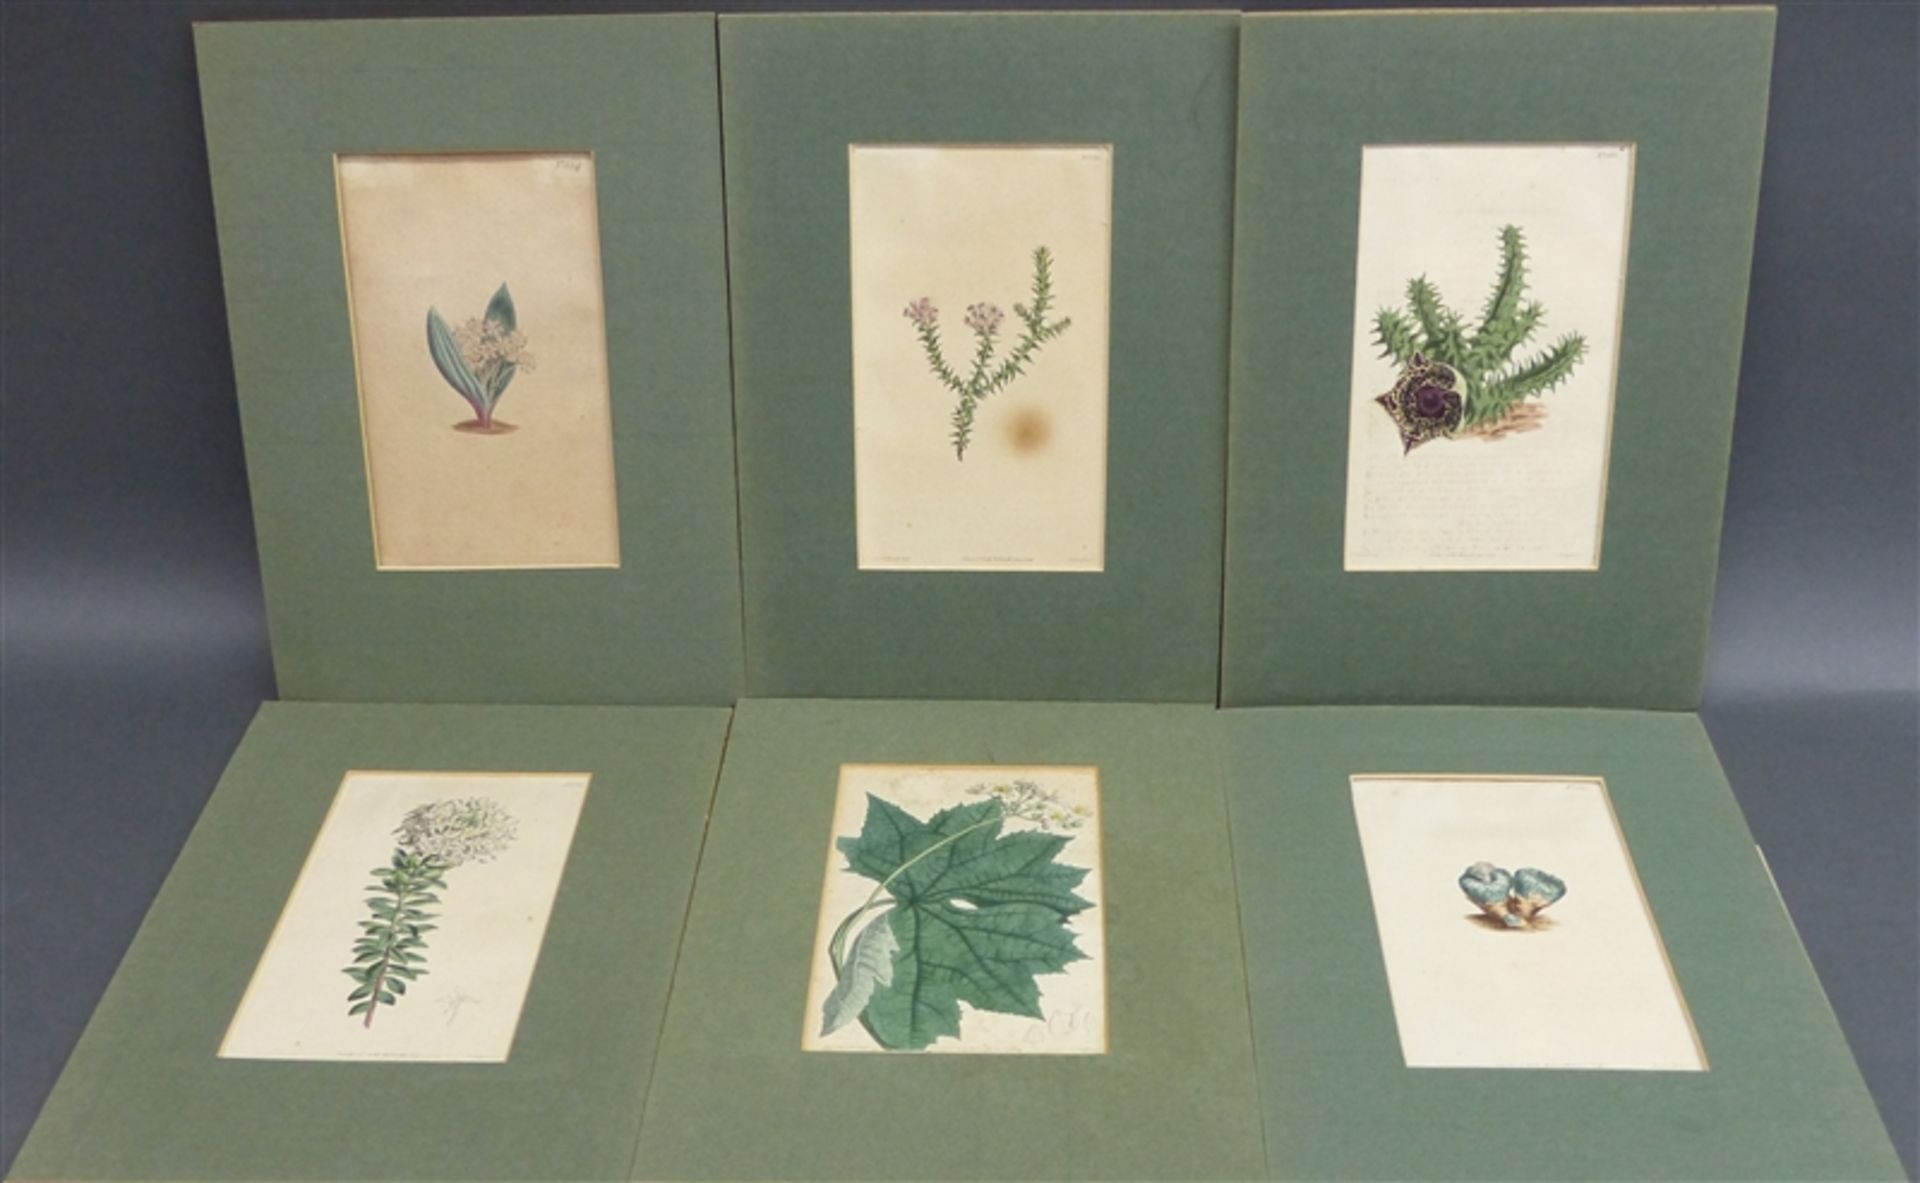 6 Pflanzenstiche um 1810, coloriert, gestochen von F. Sanfom, teilweise stockfleckig, ca. 23 x 14